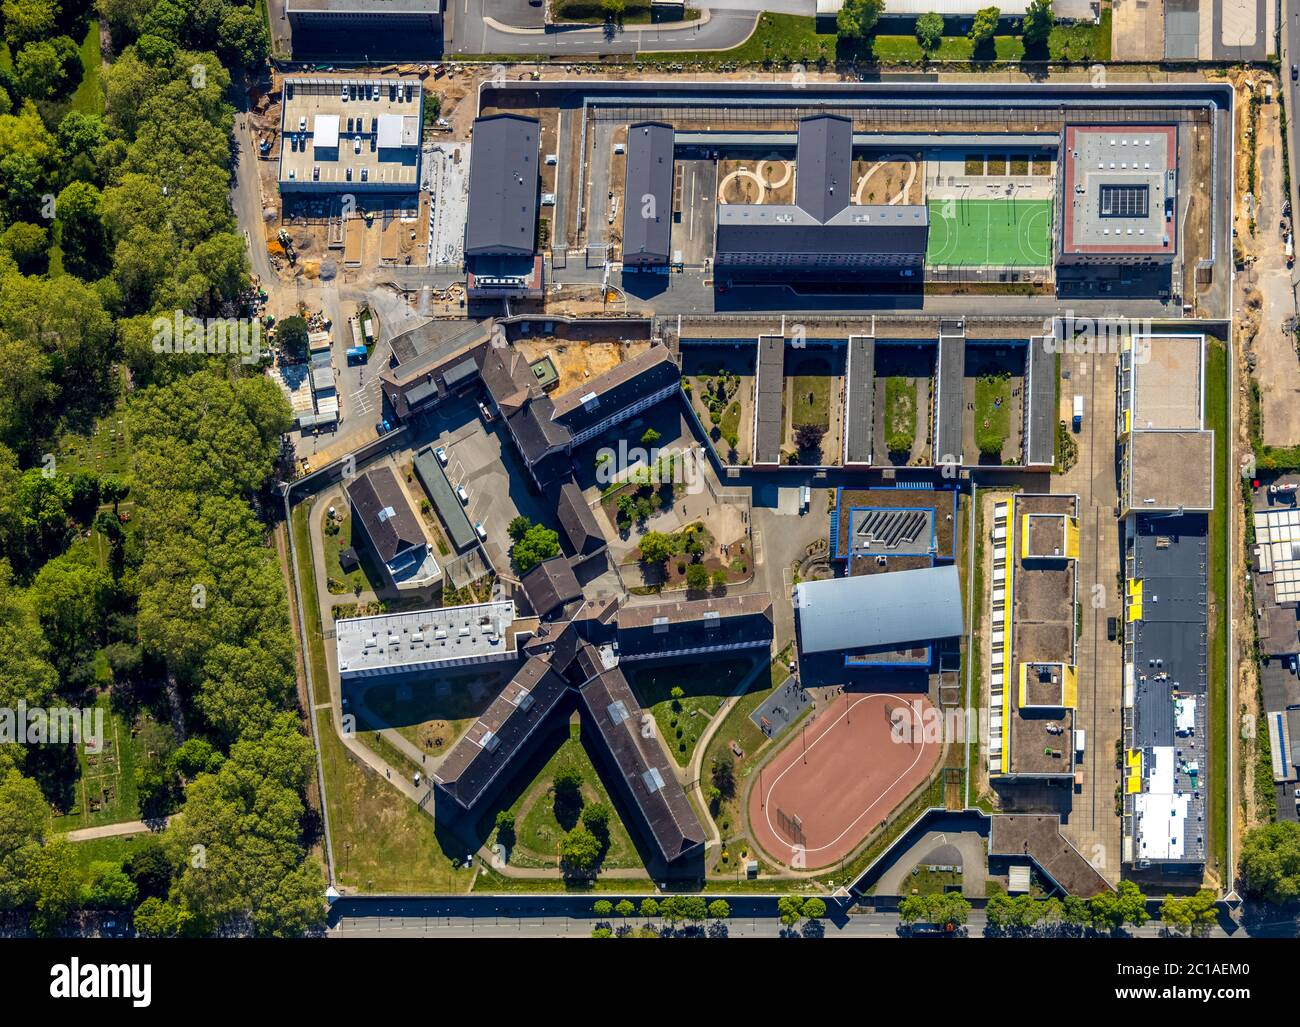 Photographie aérienne, centre correctionnel de Bochum, chantier de construction, Krümmede 3, Bochum, région de la Ruhr, Rhénanie-du-Nord-Westphalie, Allemagne, arrestation, Castreuse Banque D'Images